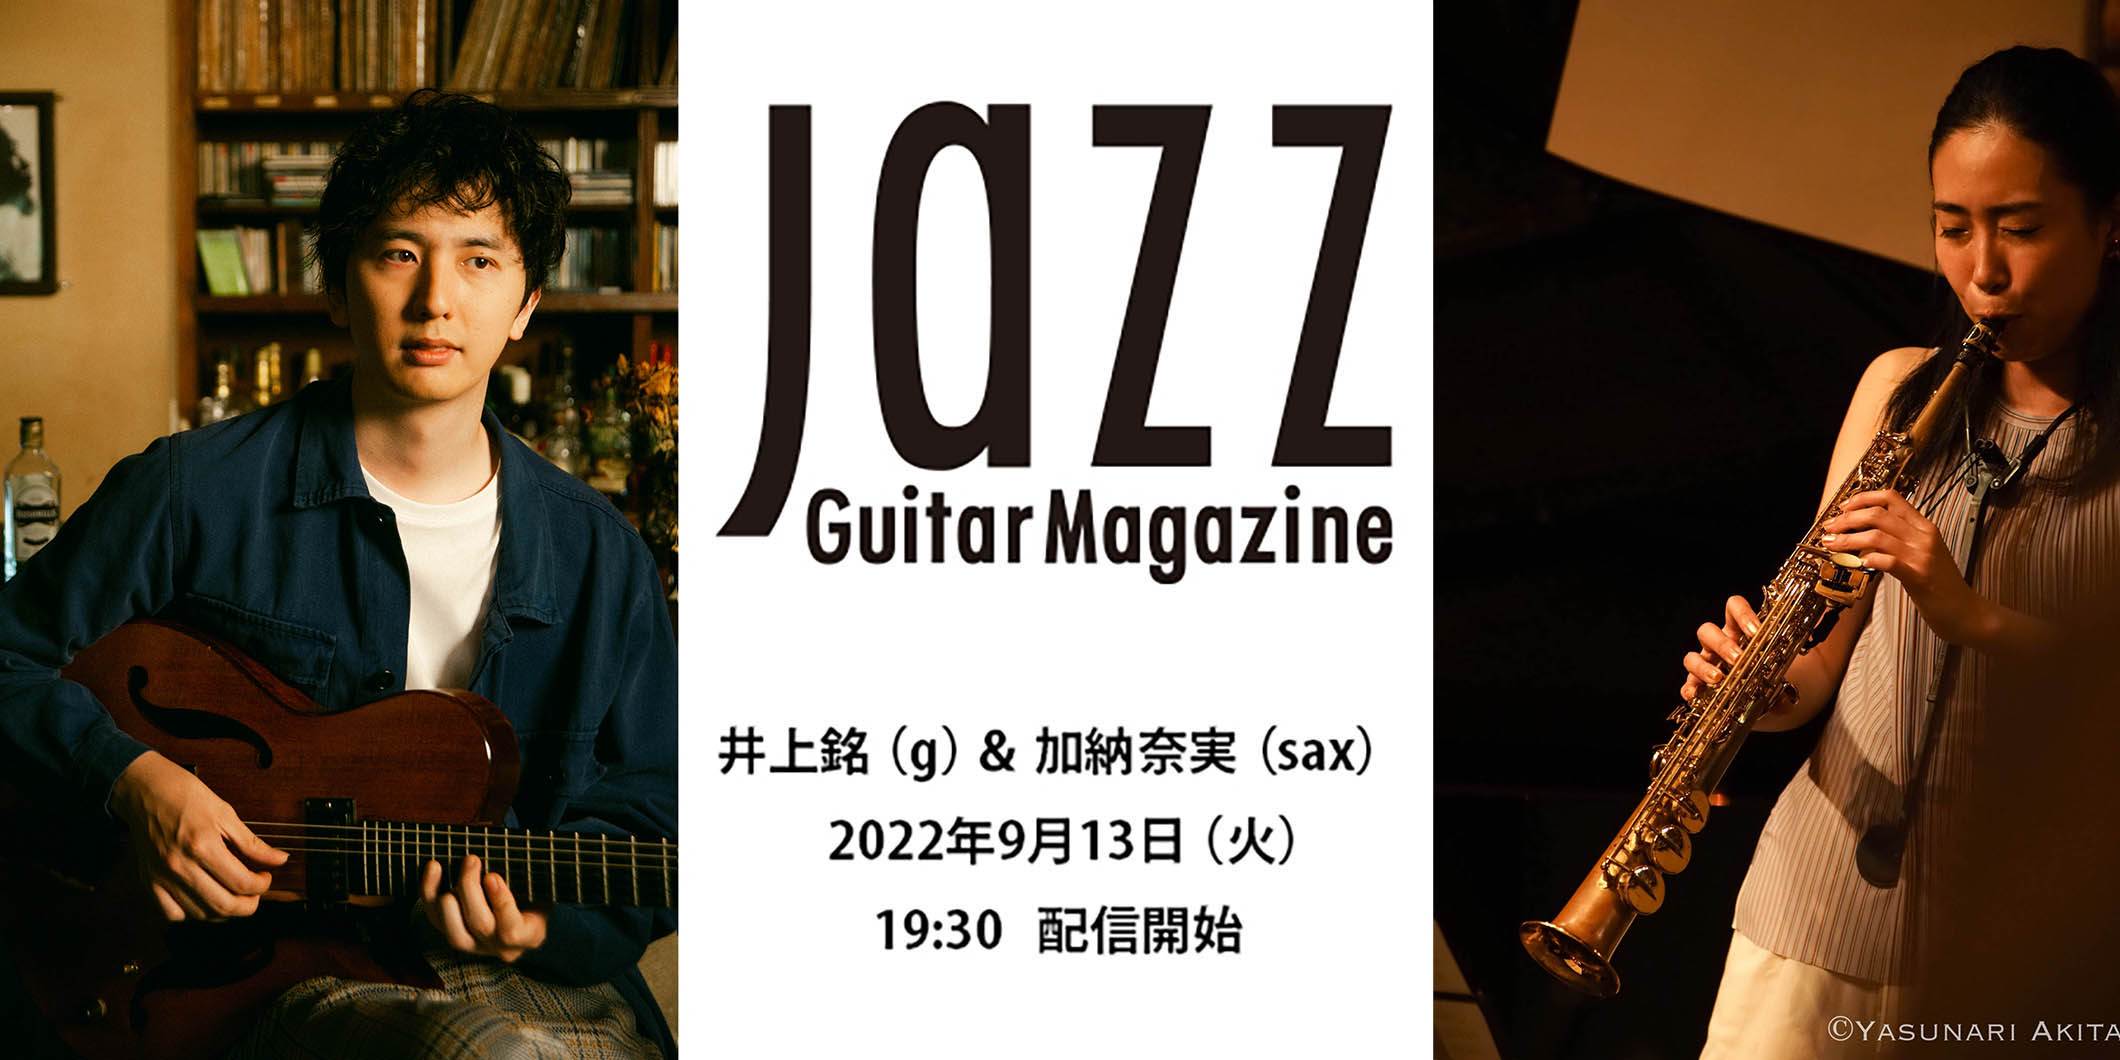 井上銘（g）＆加納奈実（sax）による配信デュオ・ライブが、9月13日（火）に『Jazz Guitar Magazine』主催で実現！